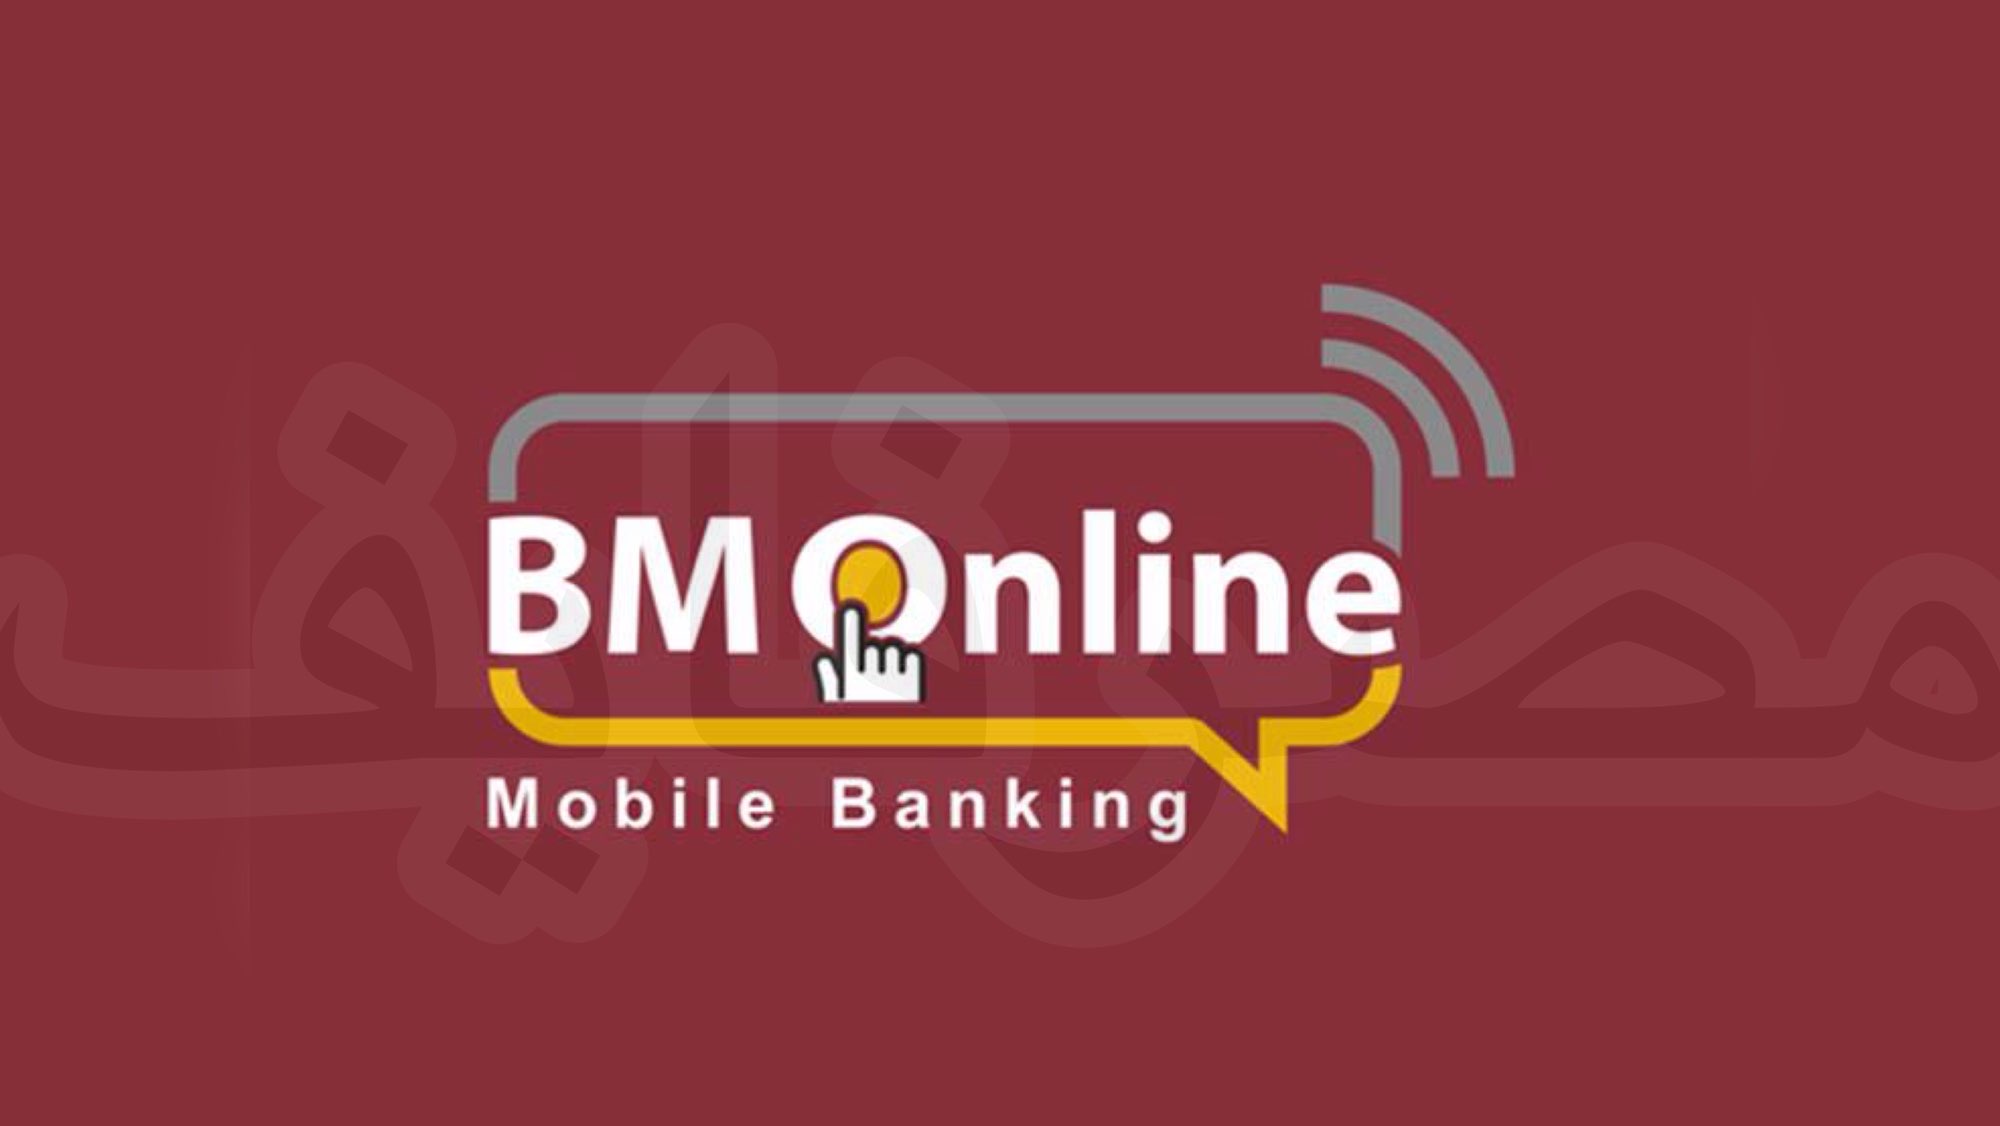 بنك مصر يعلن عن إتاحة خدمة الحجز مسبقاً بإستخدام تطبيق Bm online